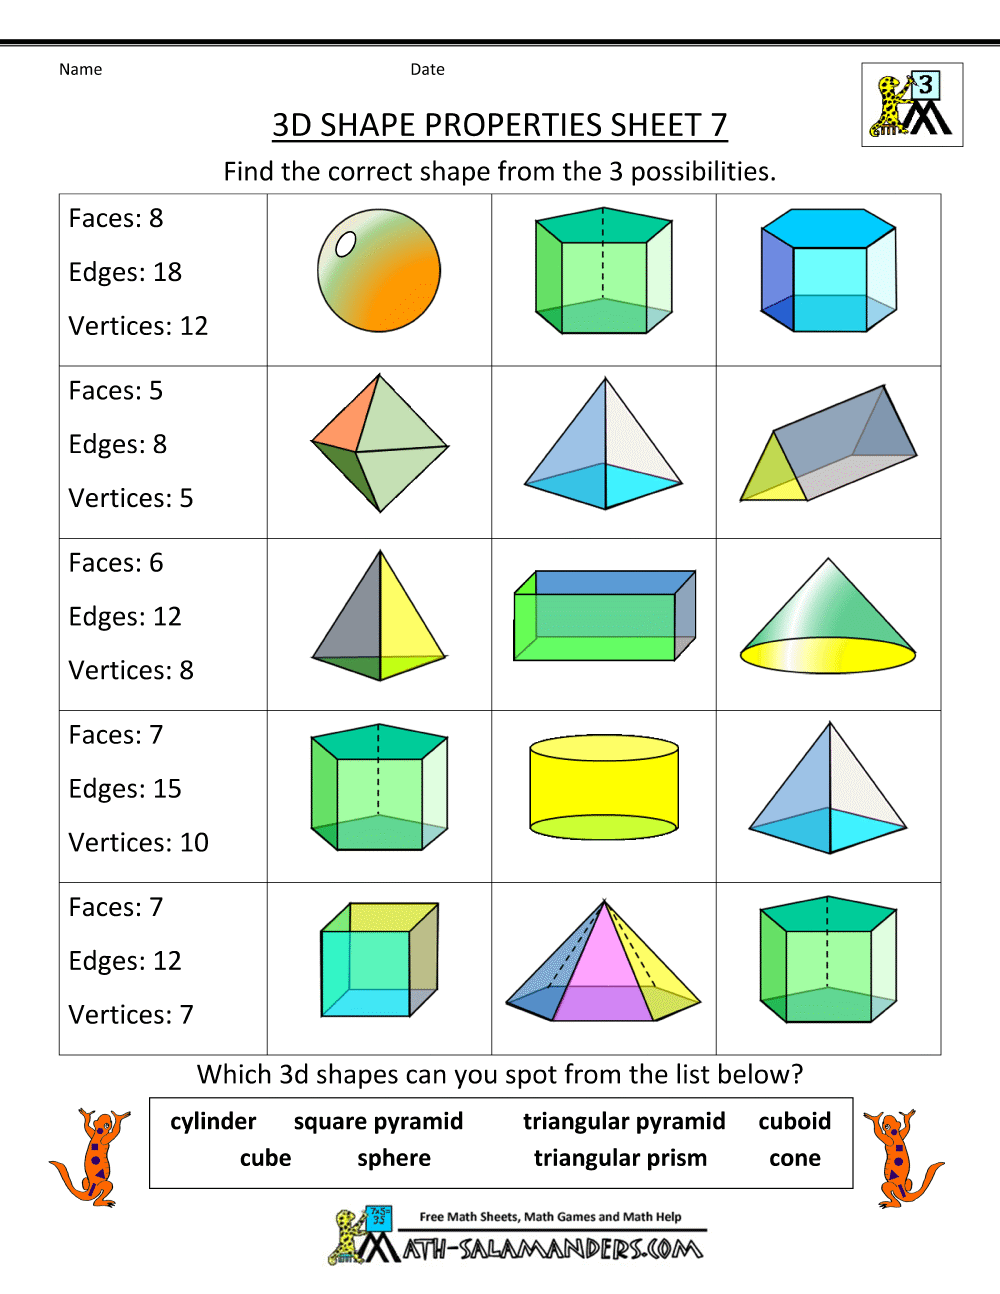 3d shapes revision worksheet